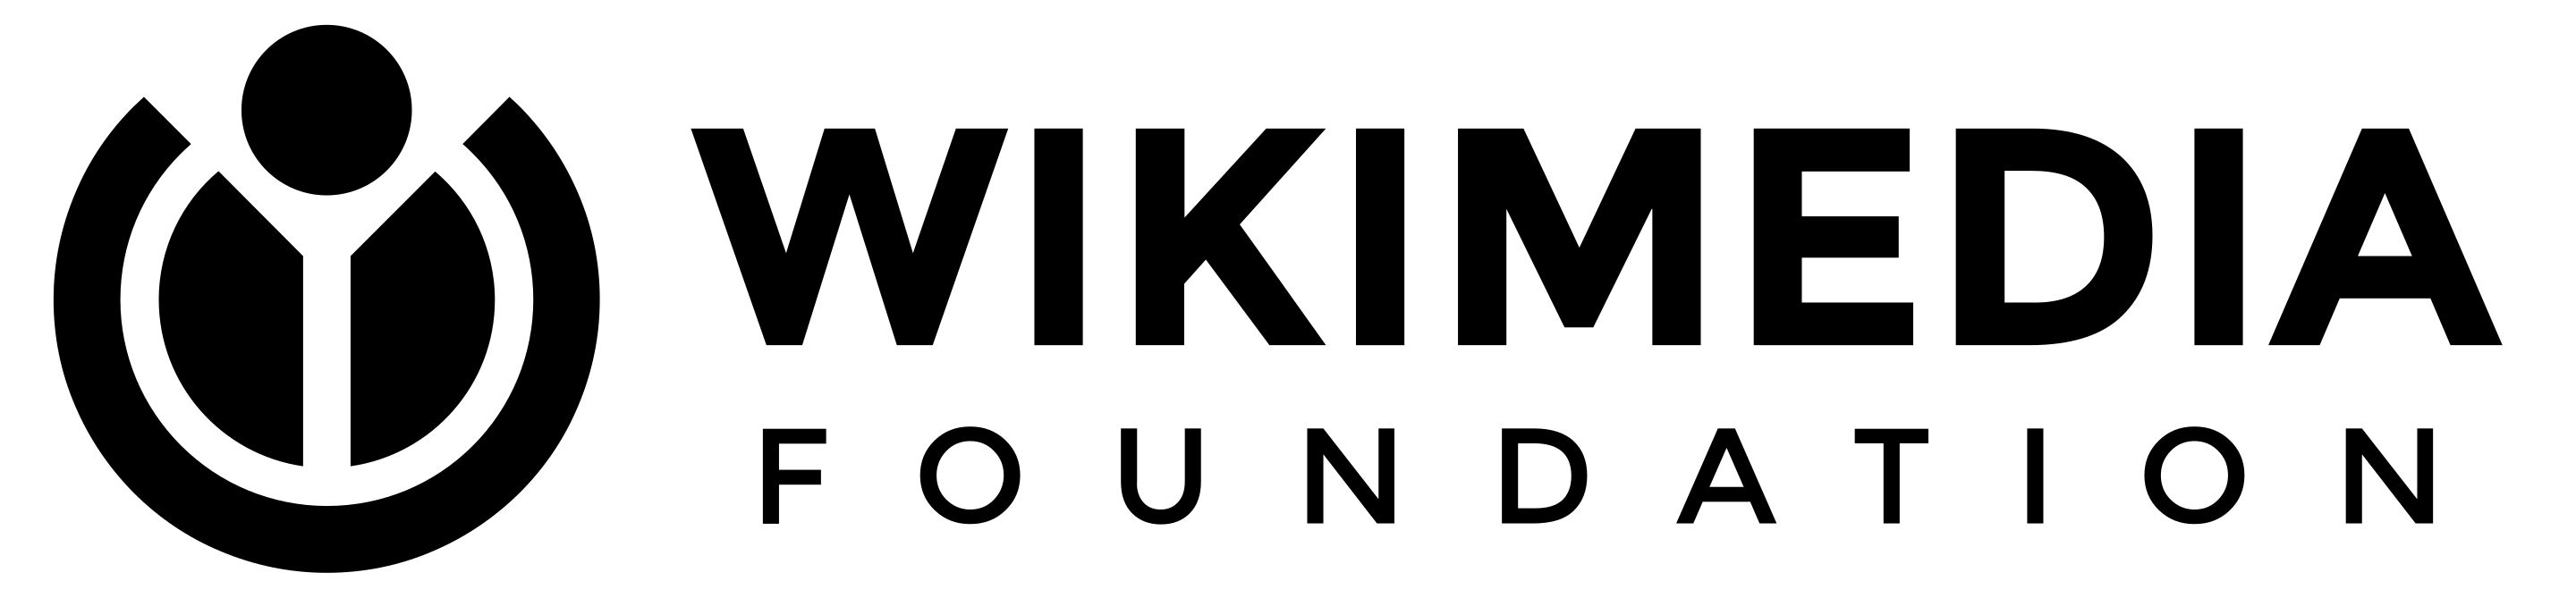 Wikimedia Foundation's Logo